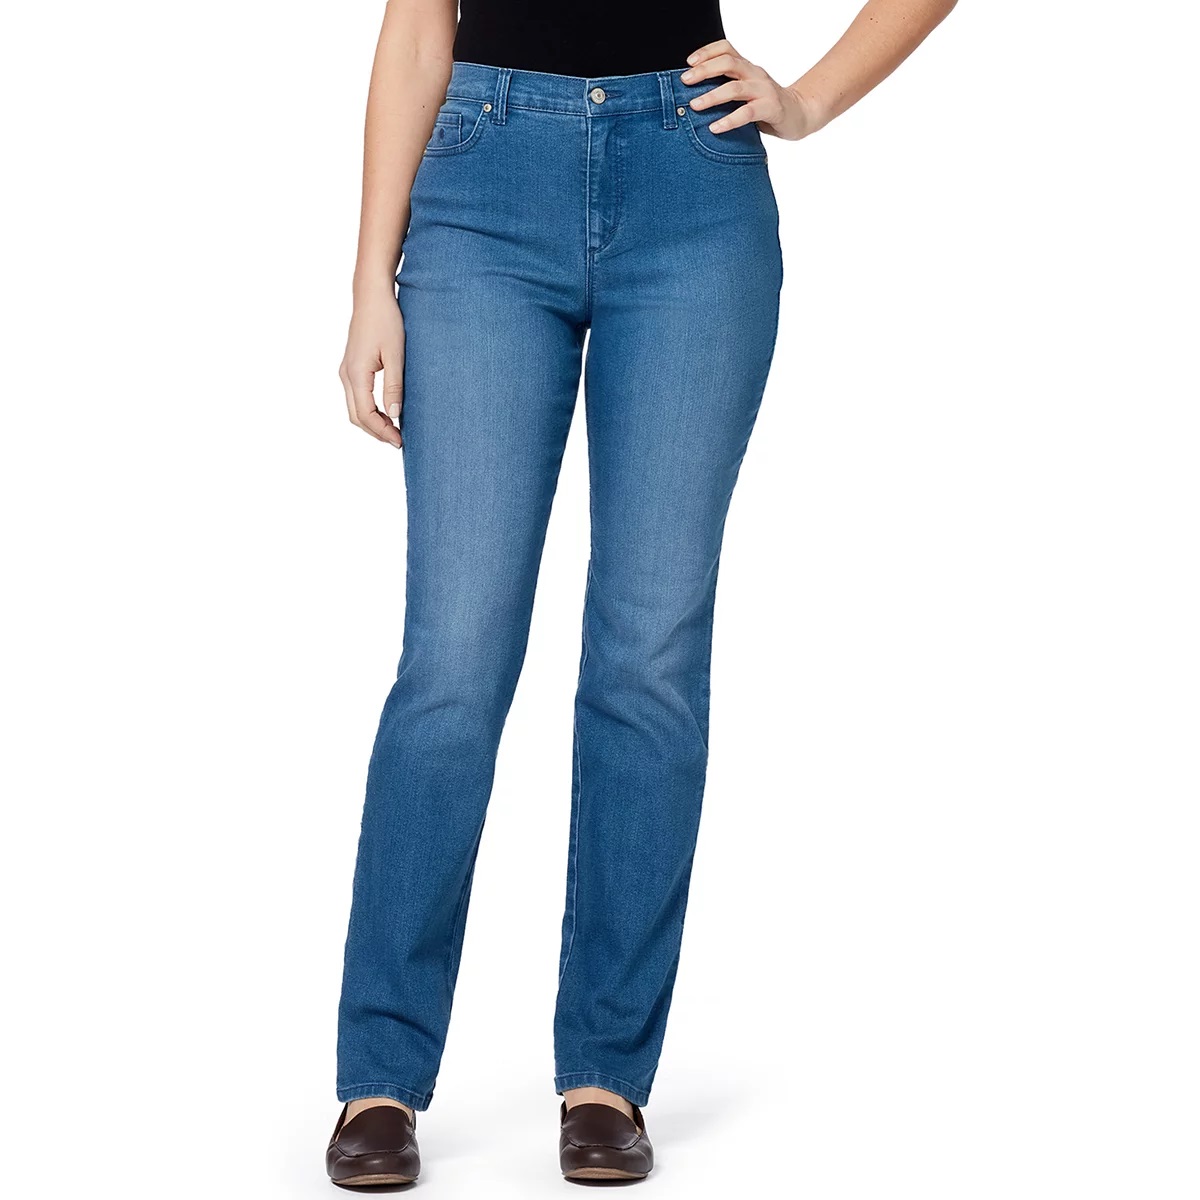 Gloria Vanderbilt Ladies Denim Average Length Jeans - Frisco 6